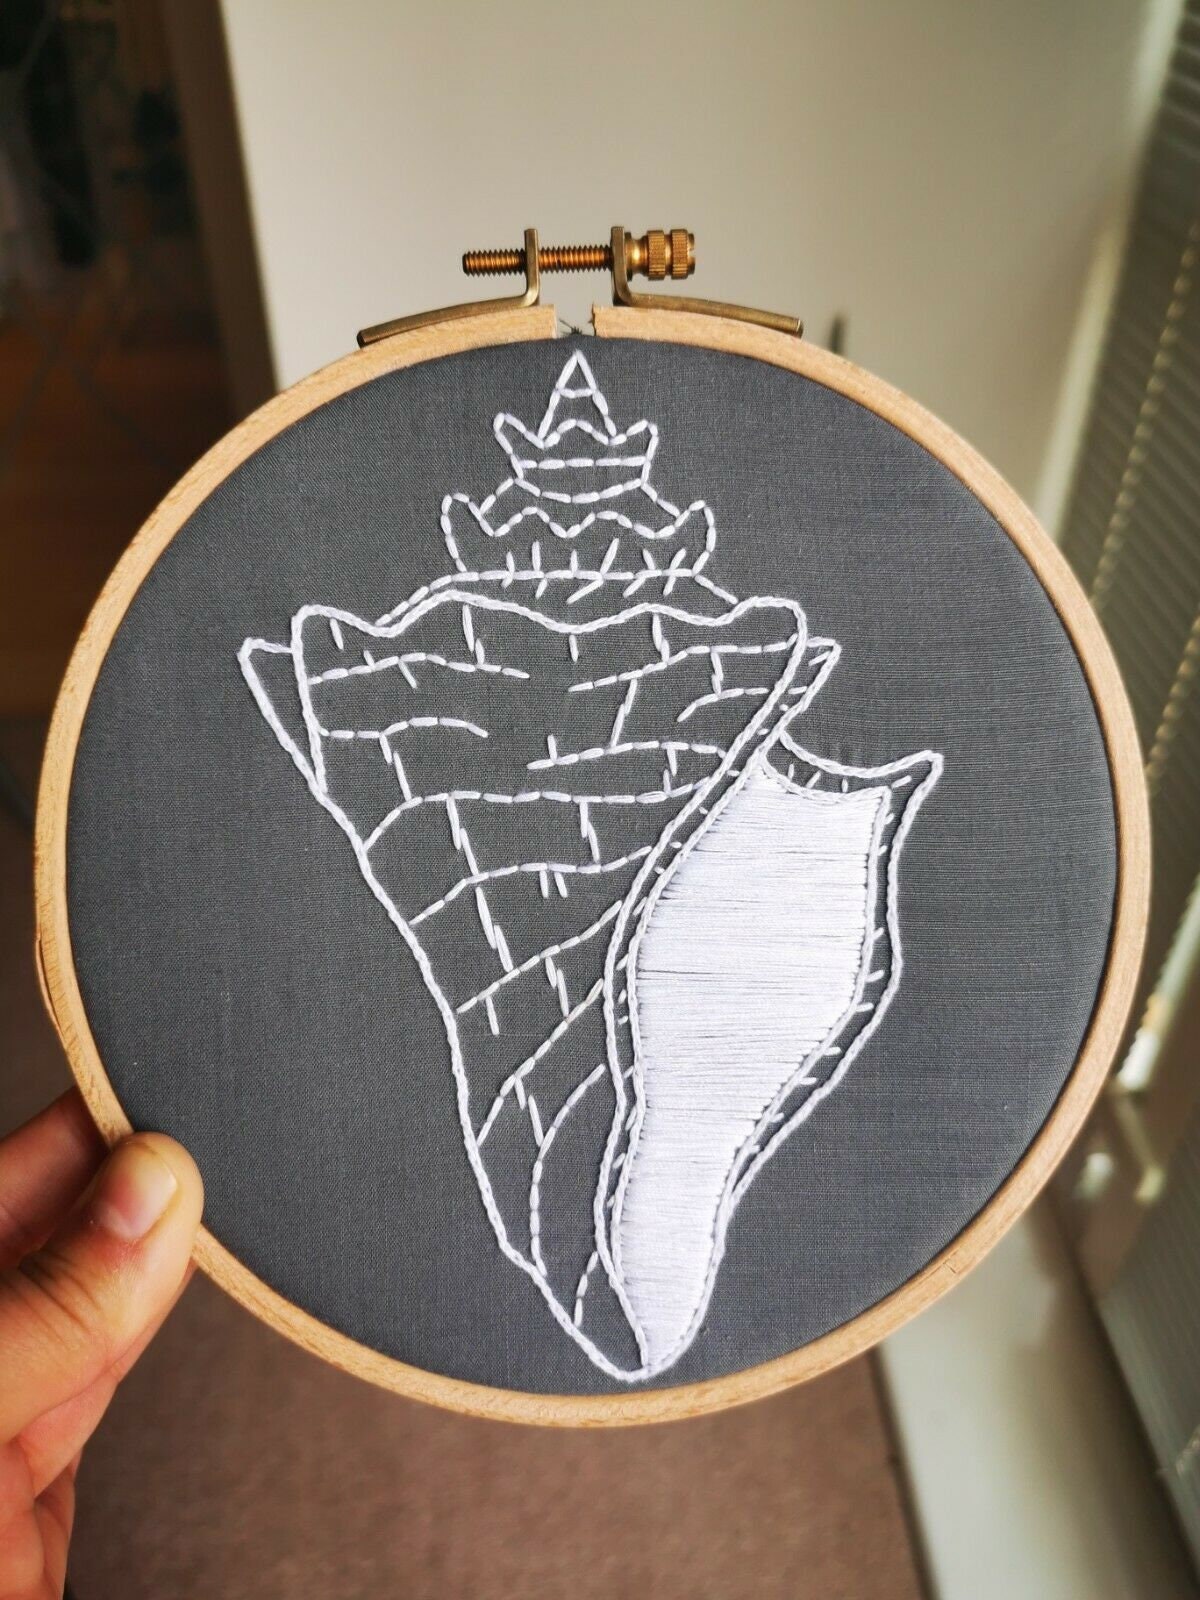 Embroidery Pattern Seashells 